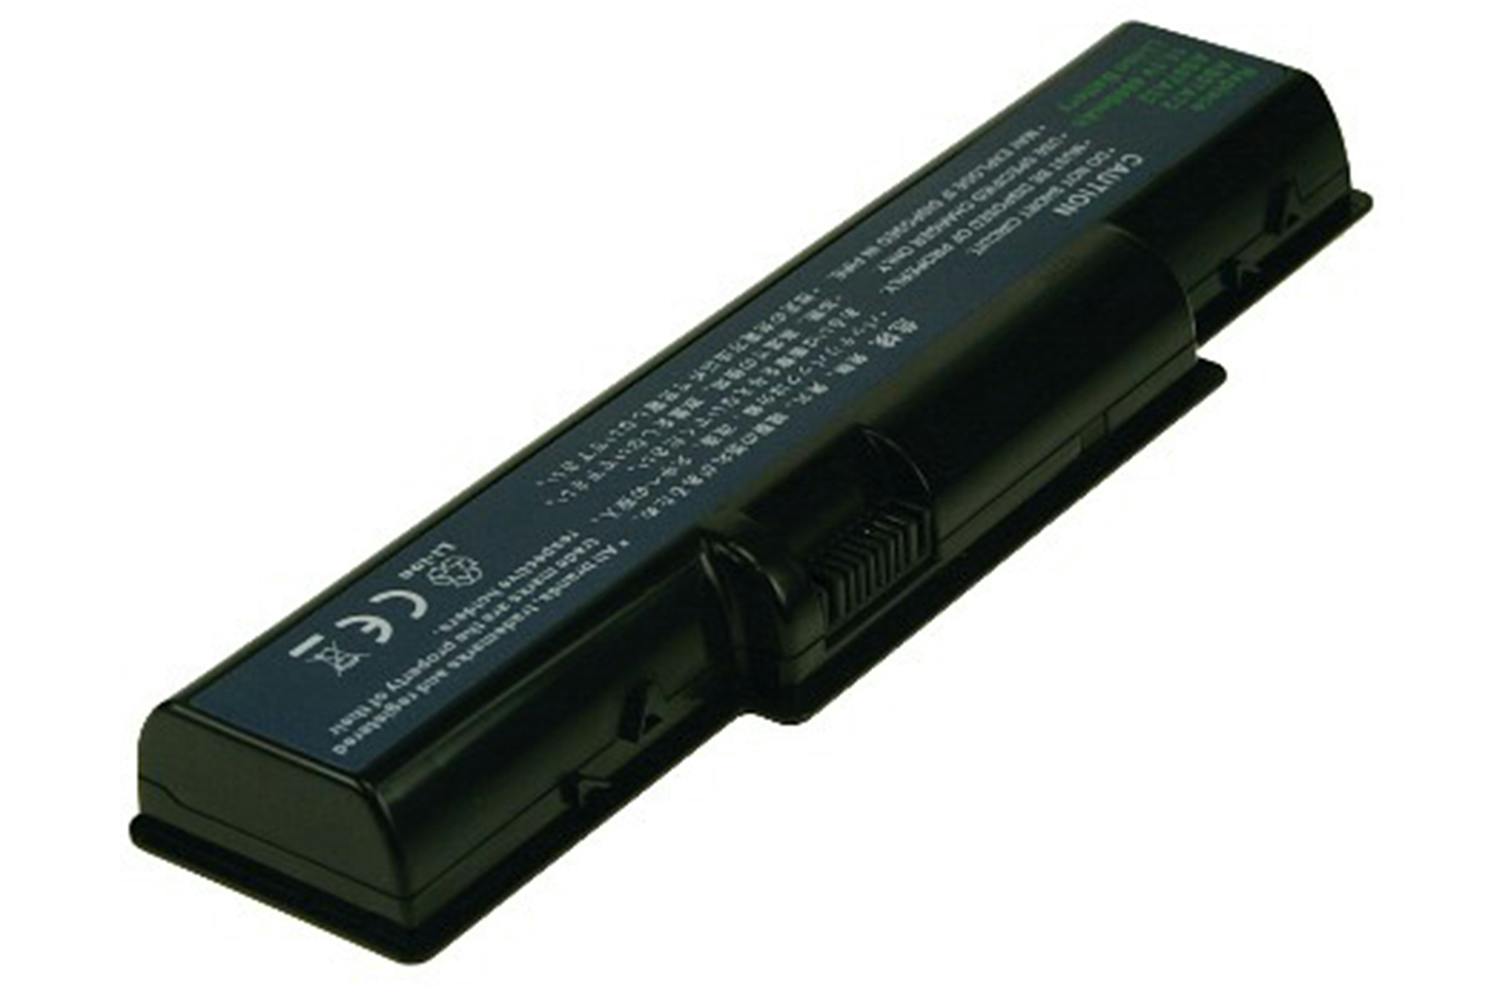 2-Power Main Battery Pack 11.1V 4600mAh